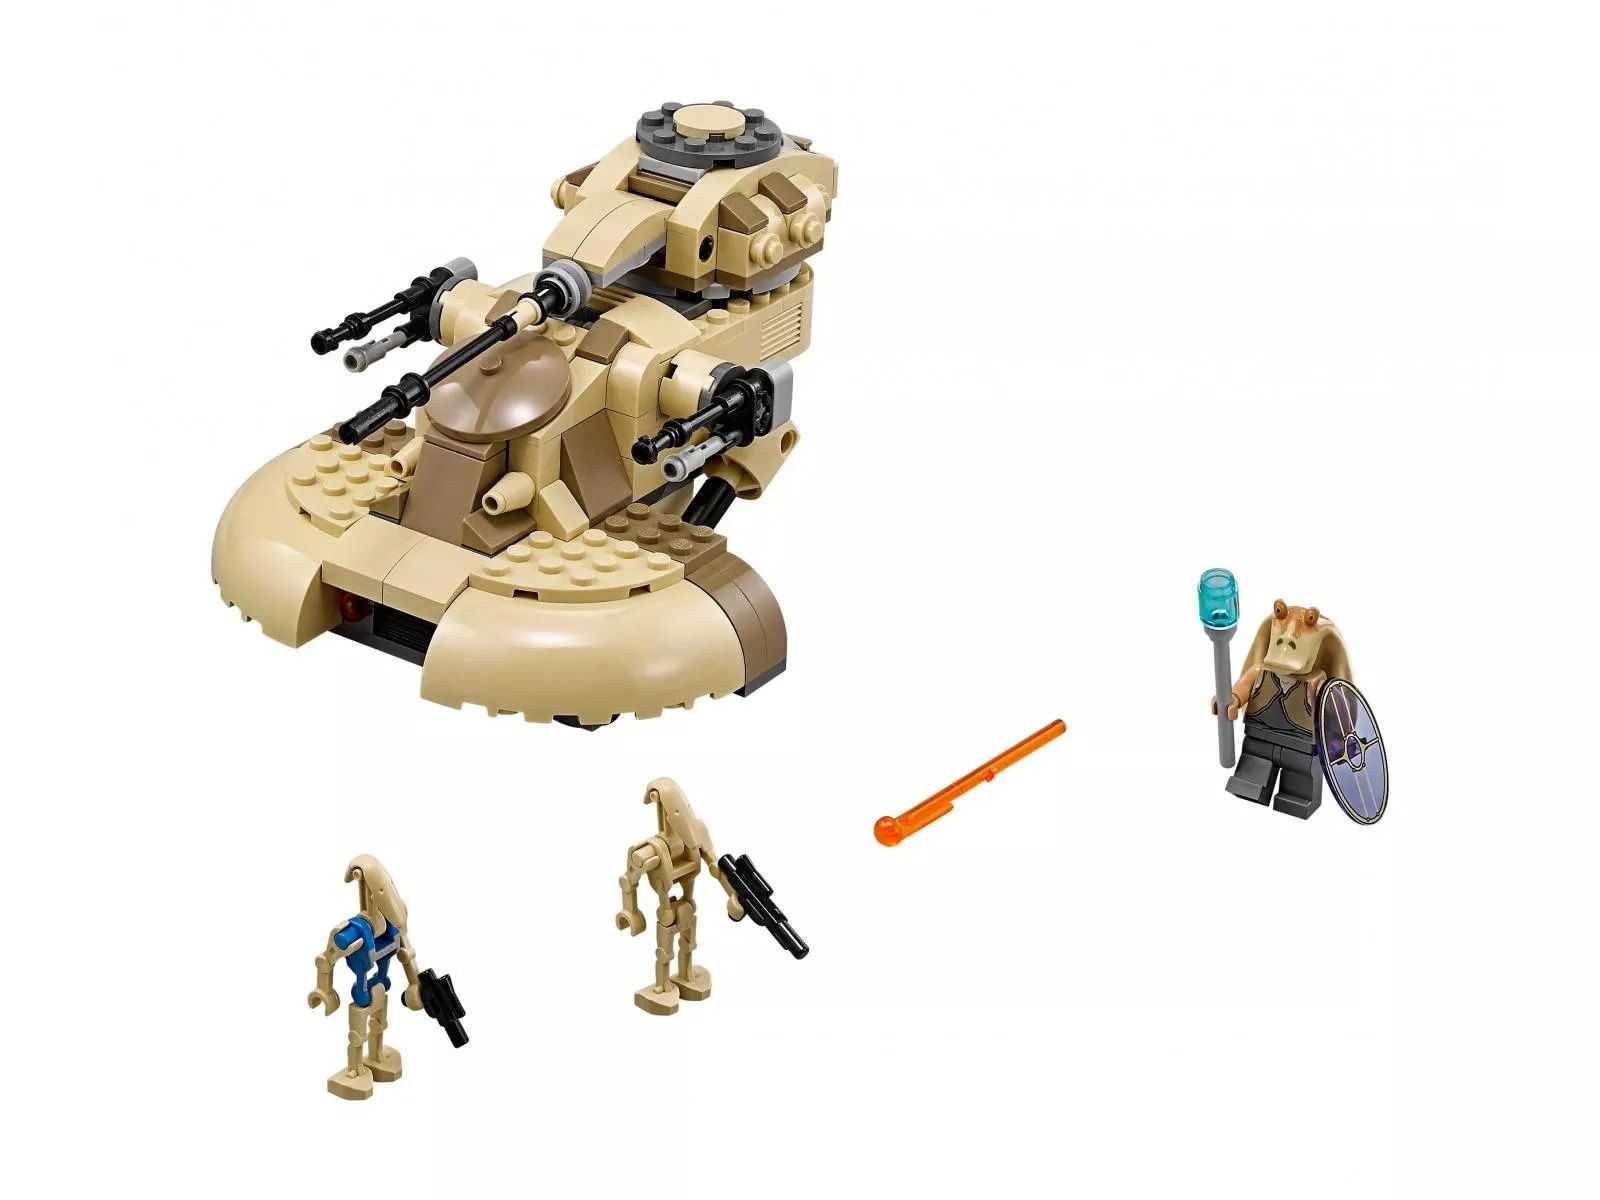 Лего Зоряні Війни - AAT [LEGO Star Wars 75080 - AAT]